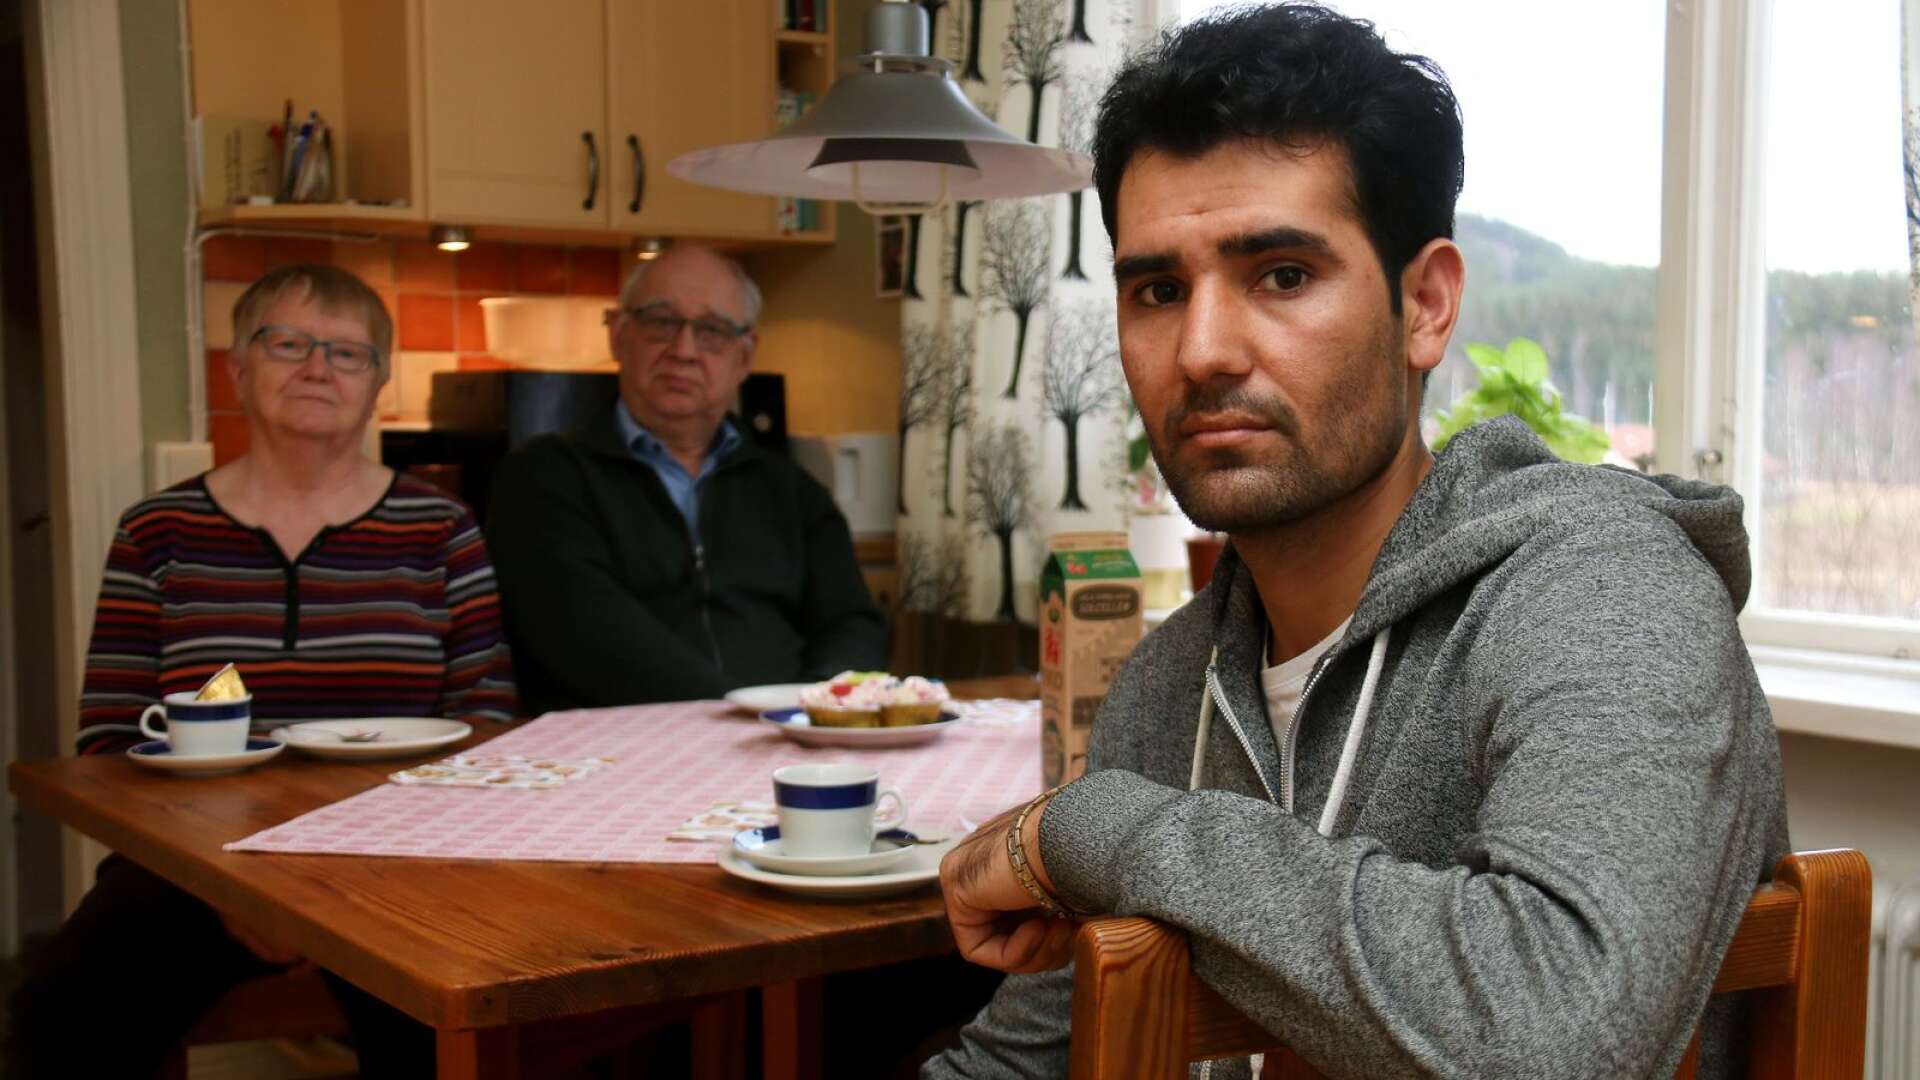 Rafiullah Safi har bott hos Gertrud Rudén och Ingemar Nordström i två år och är inne på sista året innan han tar examen som undersköterska. Efter sju avslag på asylansökan måste han dock återvända till Afghanistan, där han anser sig hotas för livet.